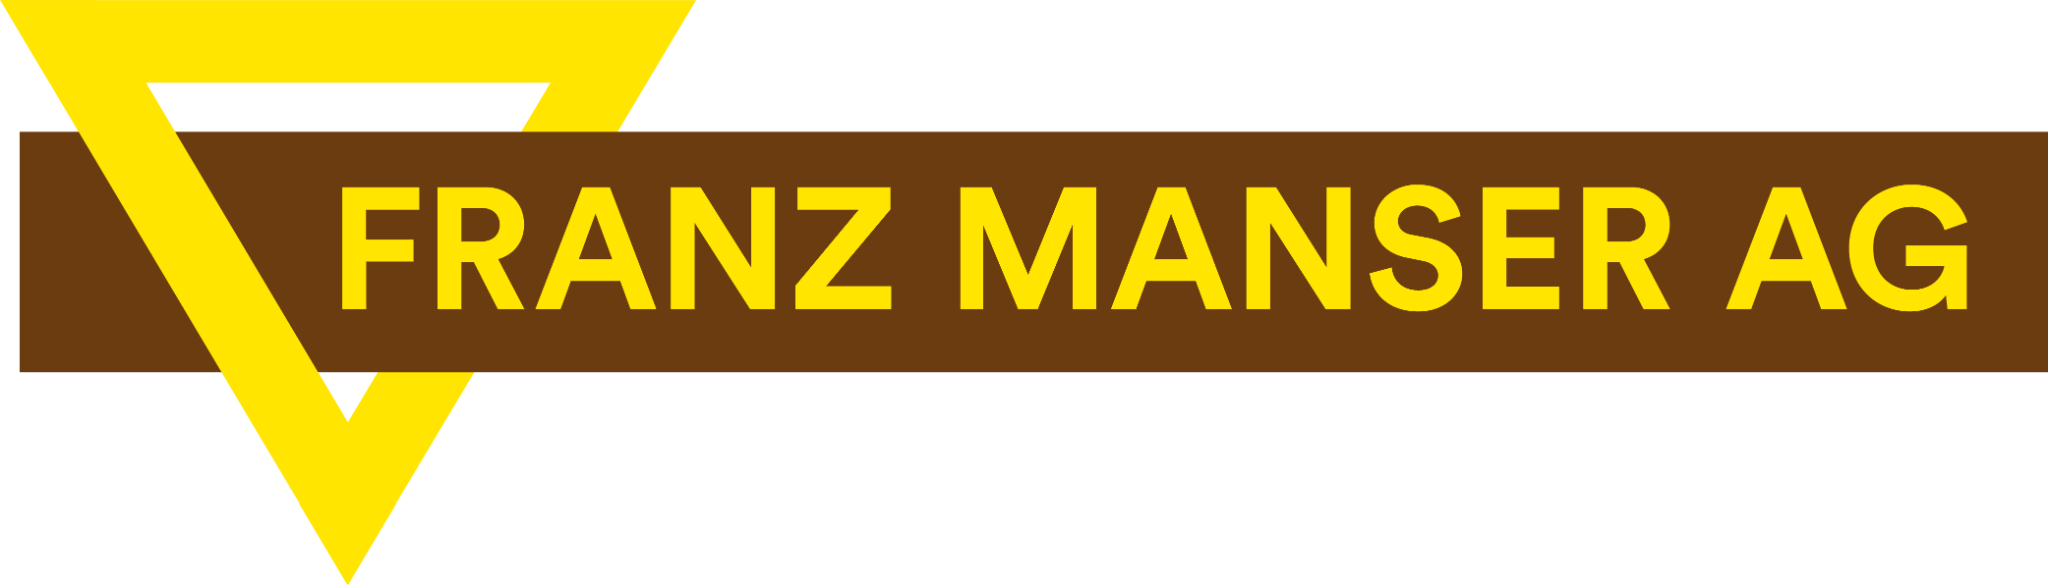 Franz Manser AG